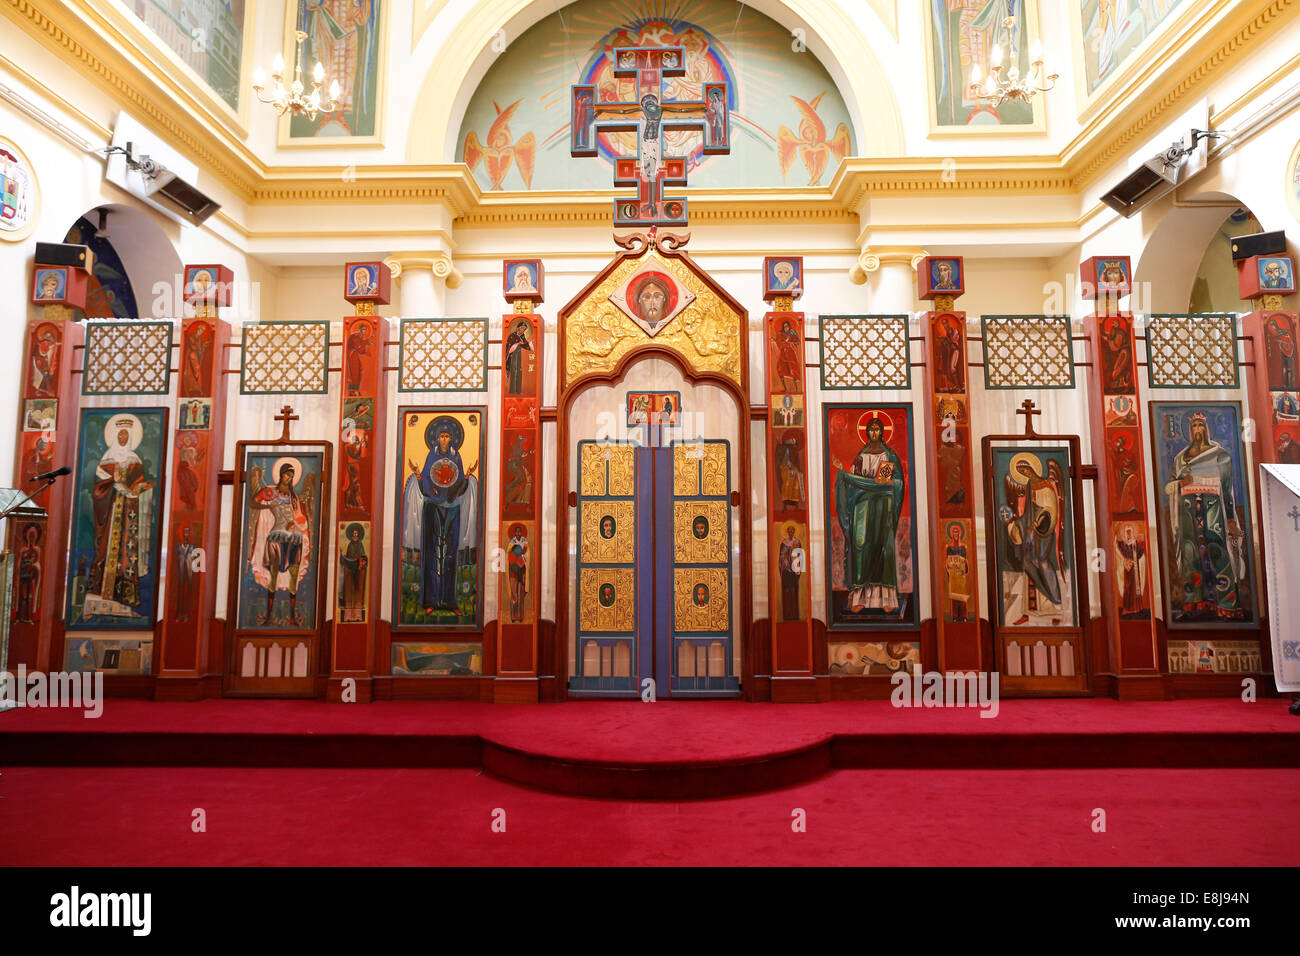 Église catholique grecque ukrainienne Saint Vladimir le Grand à Paris. Iconostase. Banque D'Images